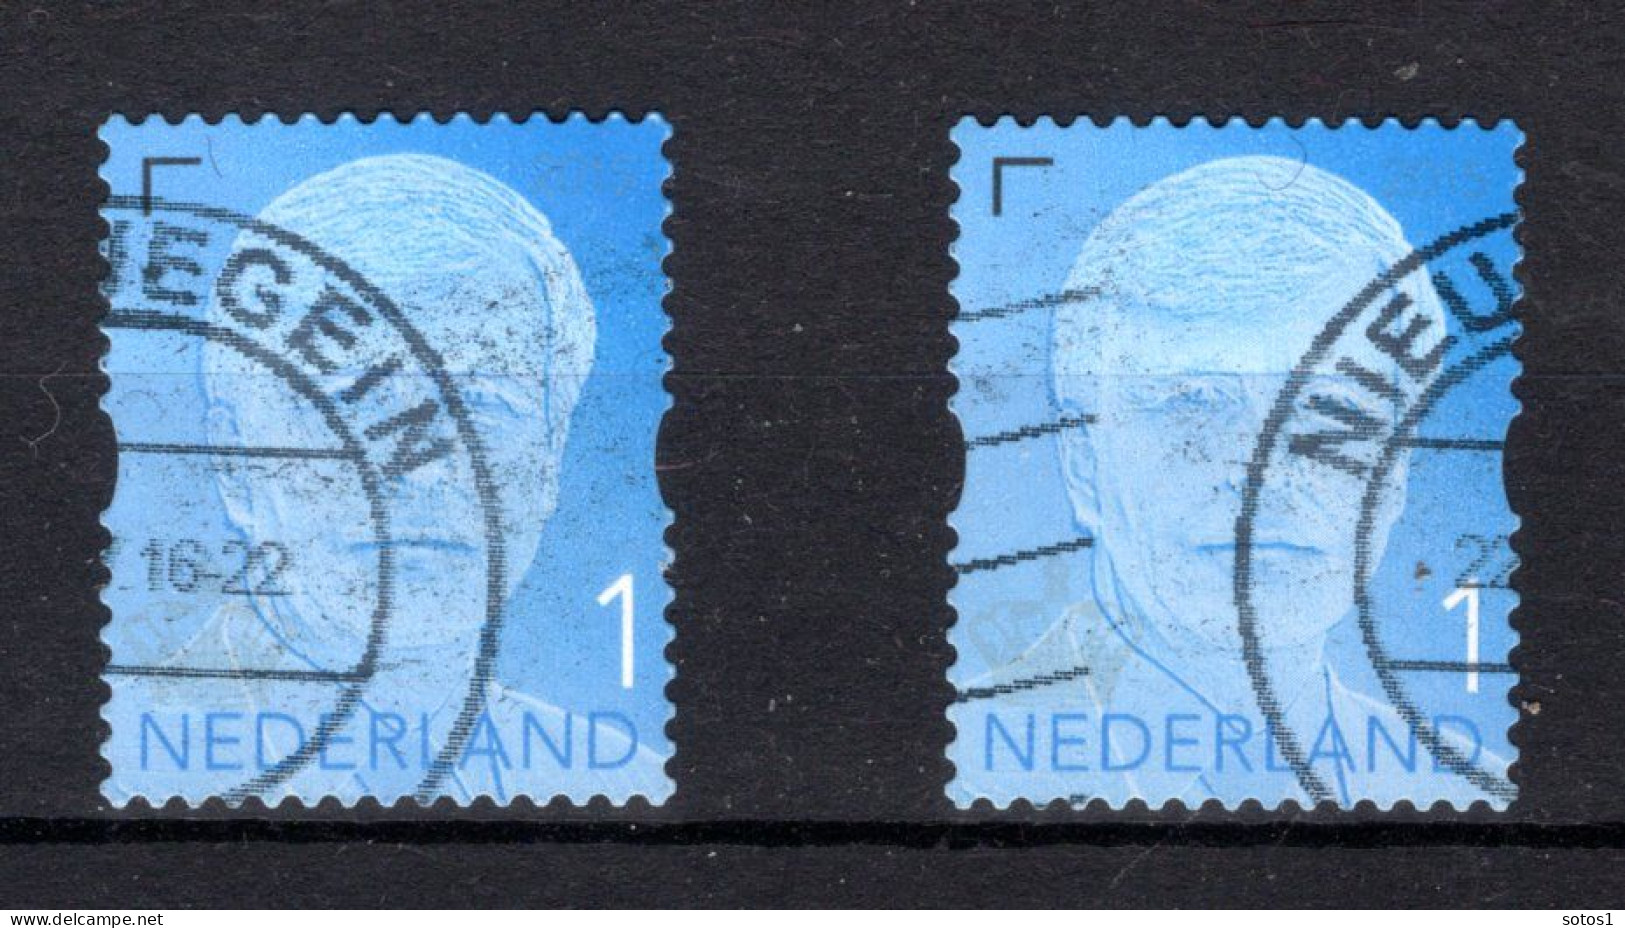 NEDERLAND 3373° Gestempeld 2015 - Koning Willem-Alexander - Gebraucht